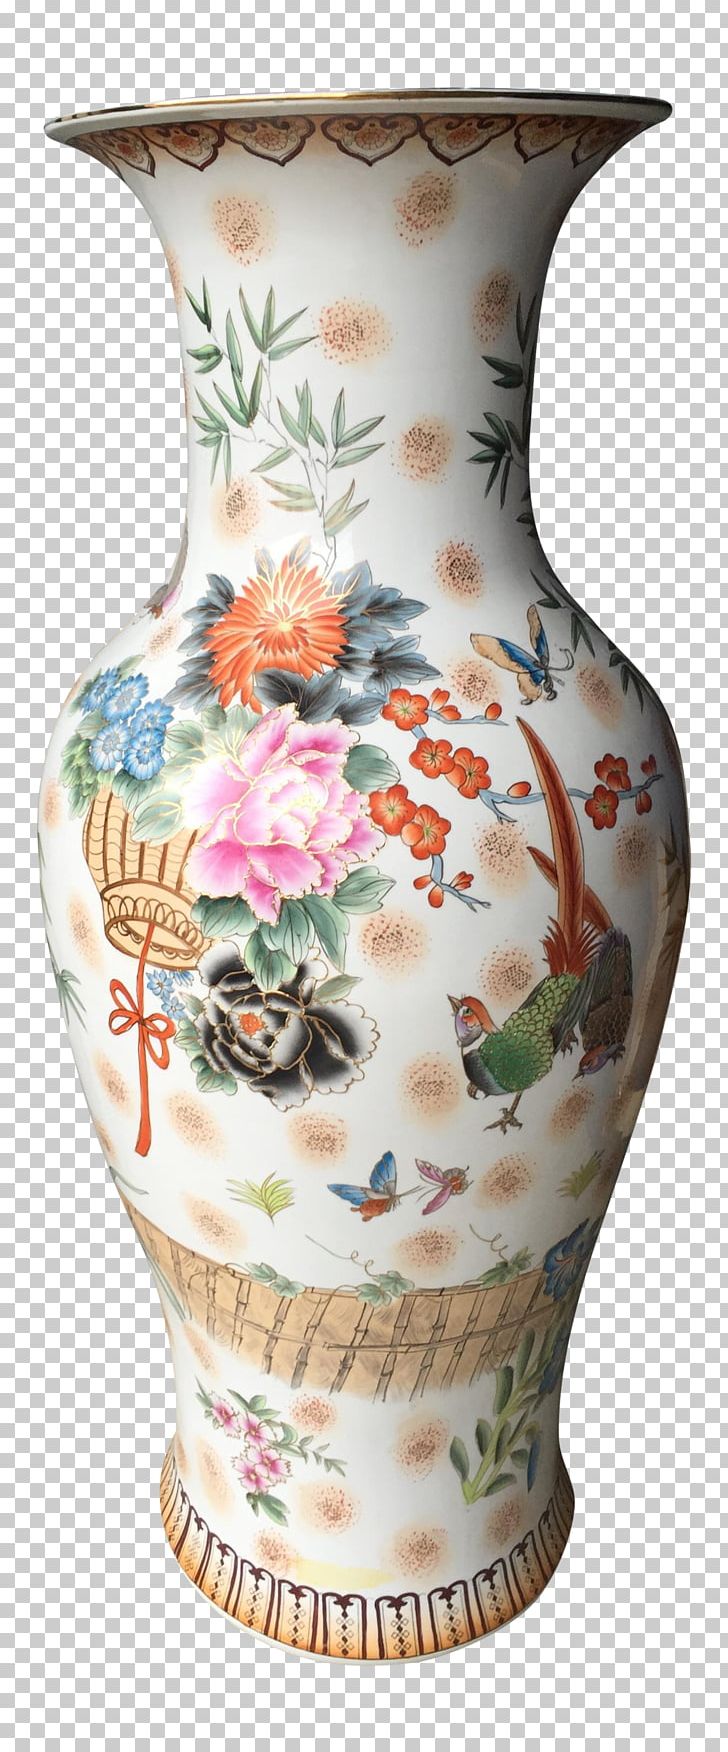 Vase Porcelain Pottery Jug PNG, Clipart, Artifact, Ceramic, Jug, Porcelain, Pottery Free PNG Download